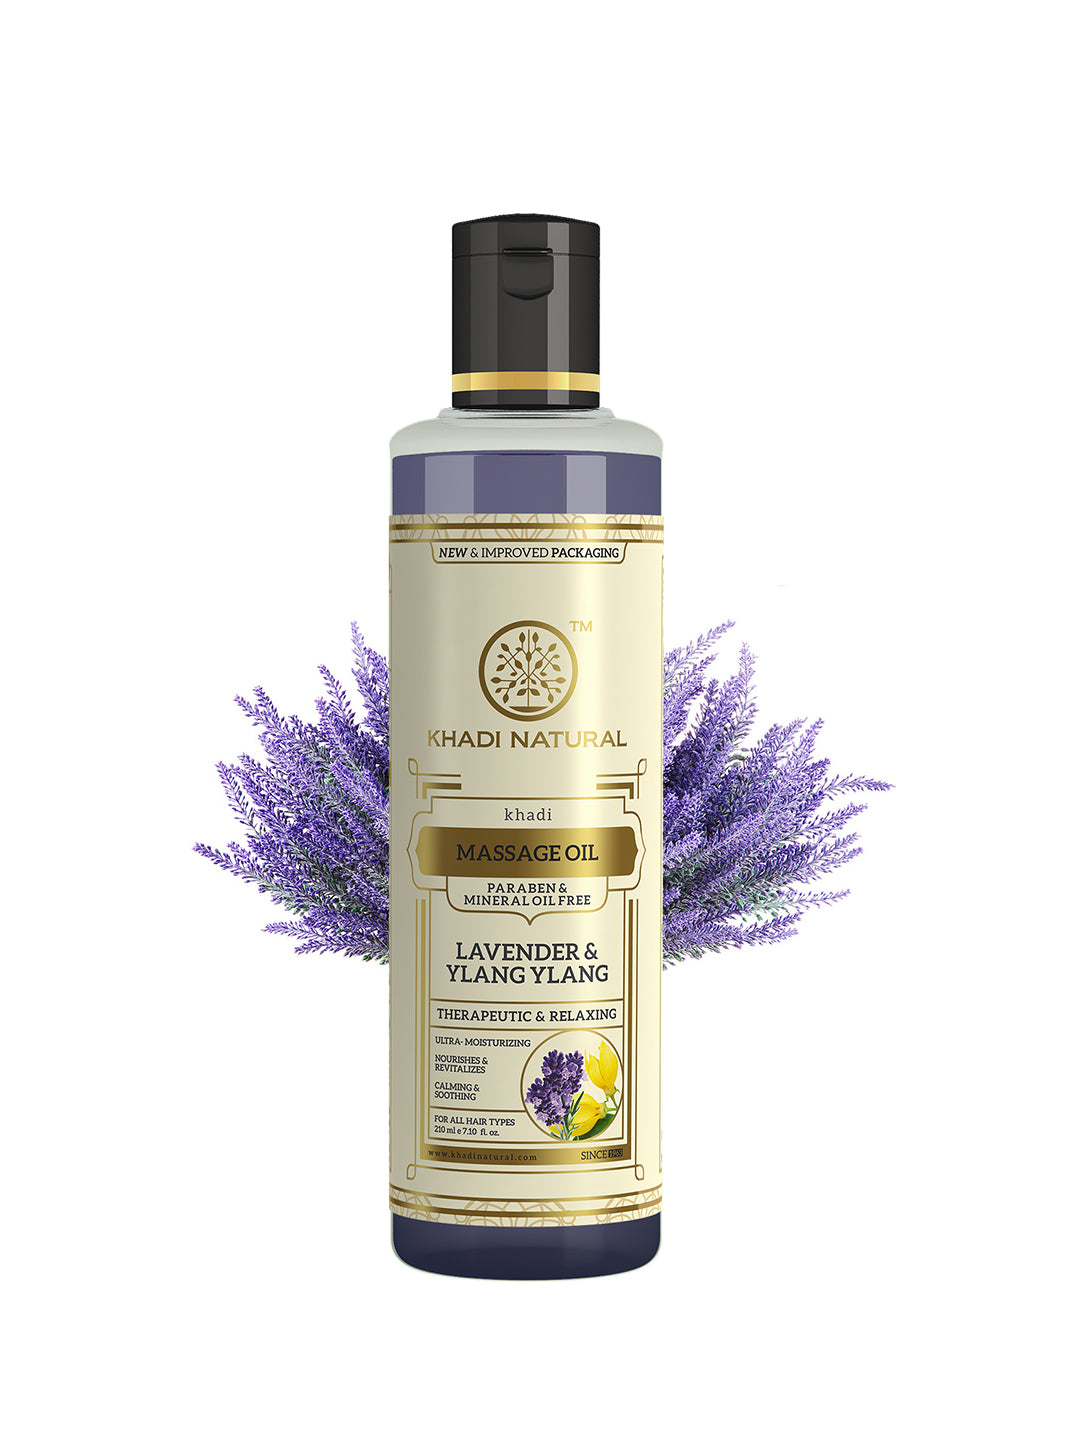 Khadi Natural Lavender & Ylang Ylang Massage Oil Paraben Mineral Oil Free 210 ml